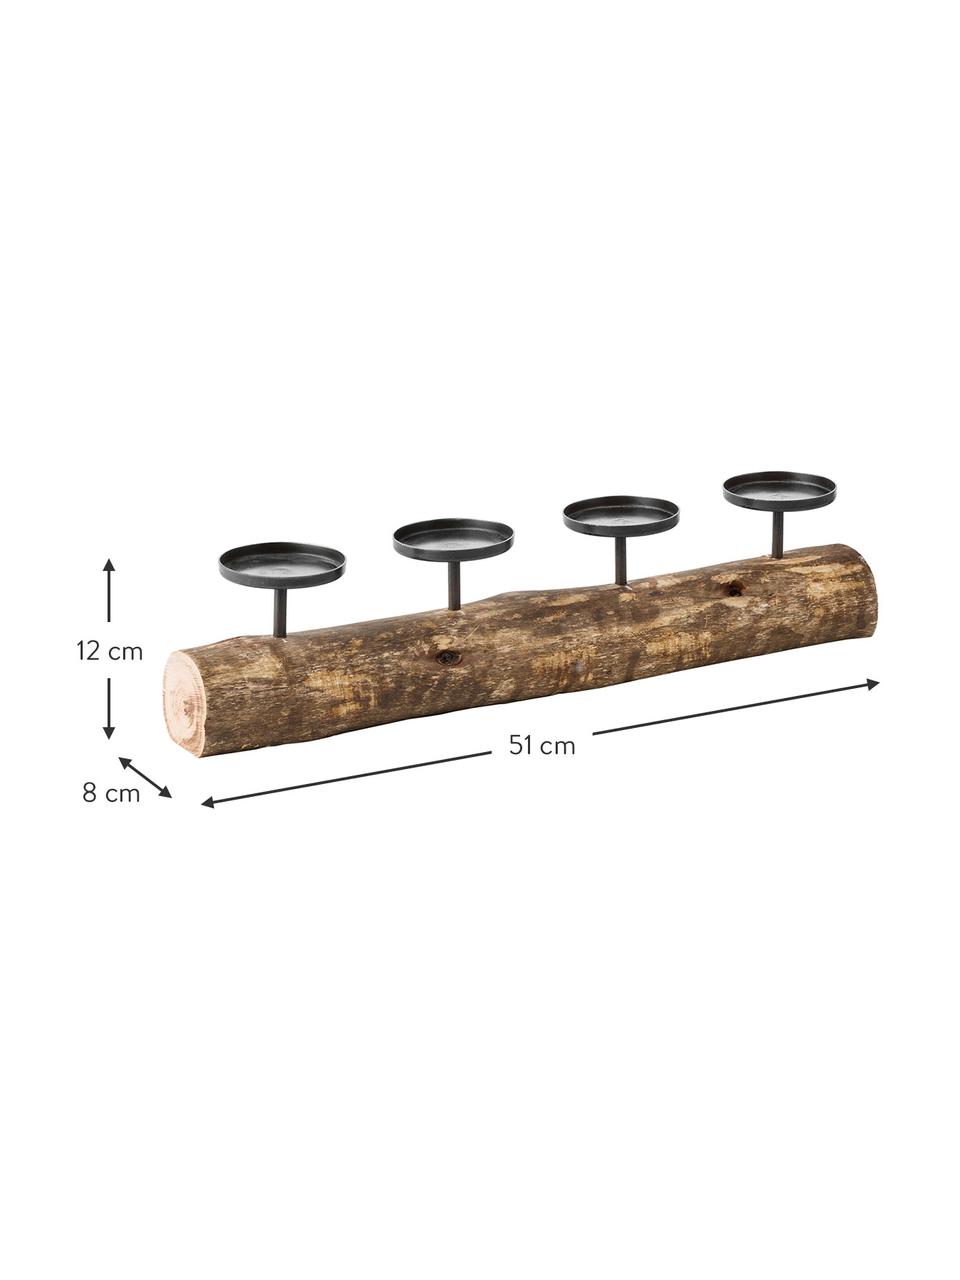 Dřevěný svícen Tempe, Kov, dřevo, Tmavé dřevo, černá, D 51 cm, Š 8 cm, V 12 cm